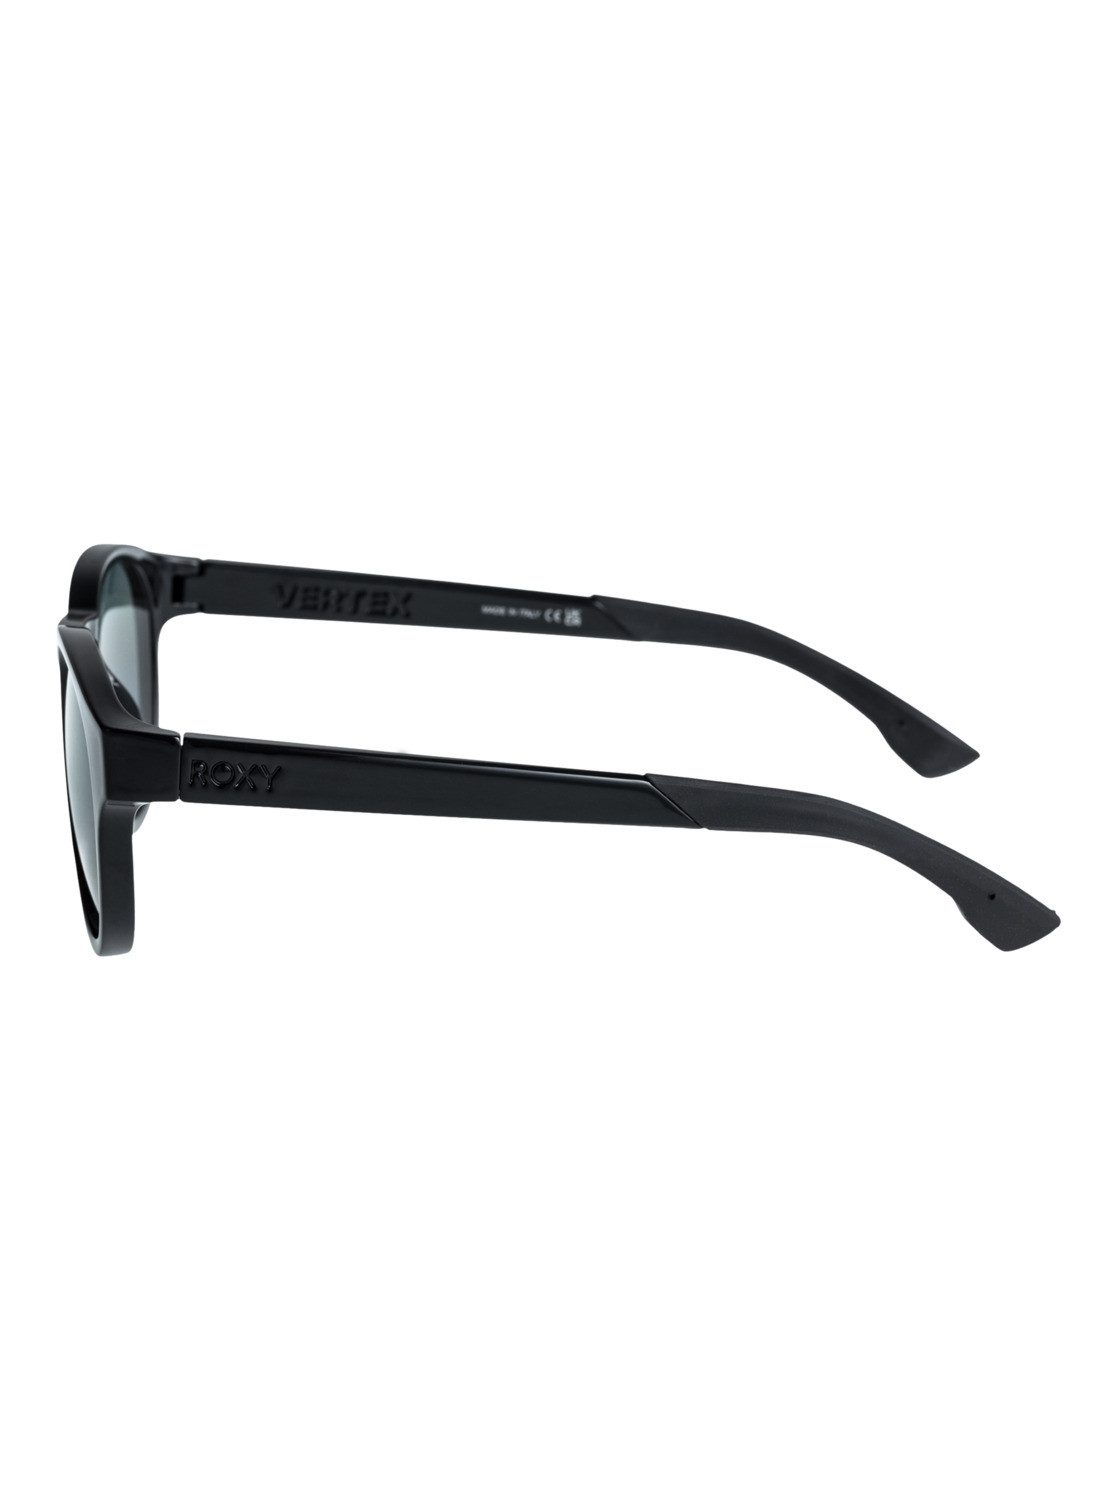 Sonnenbrille Vertex Plz Roxy P Black/Grey